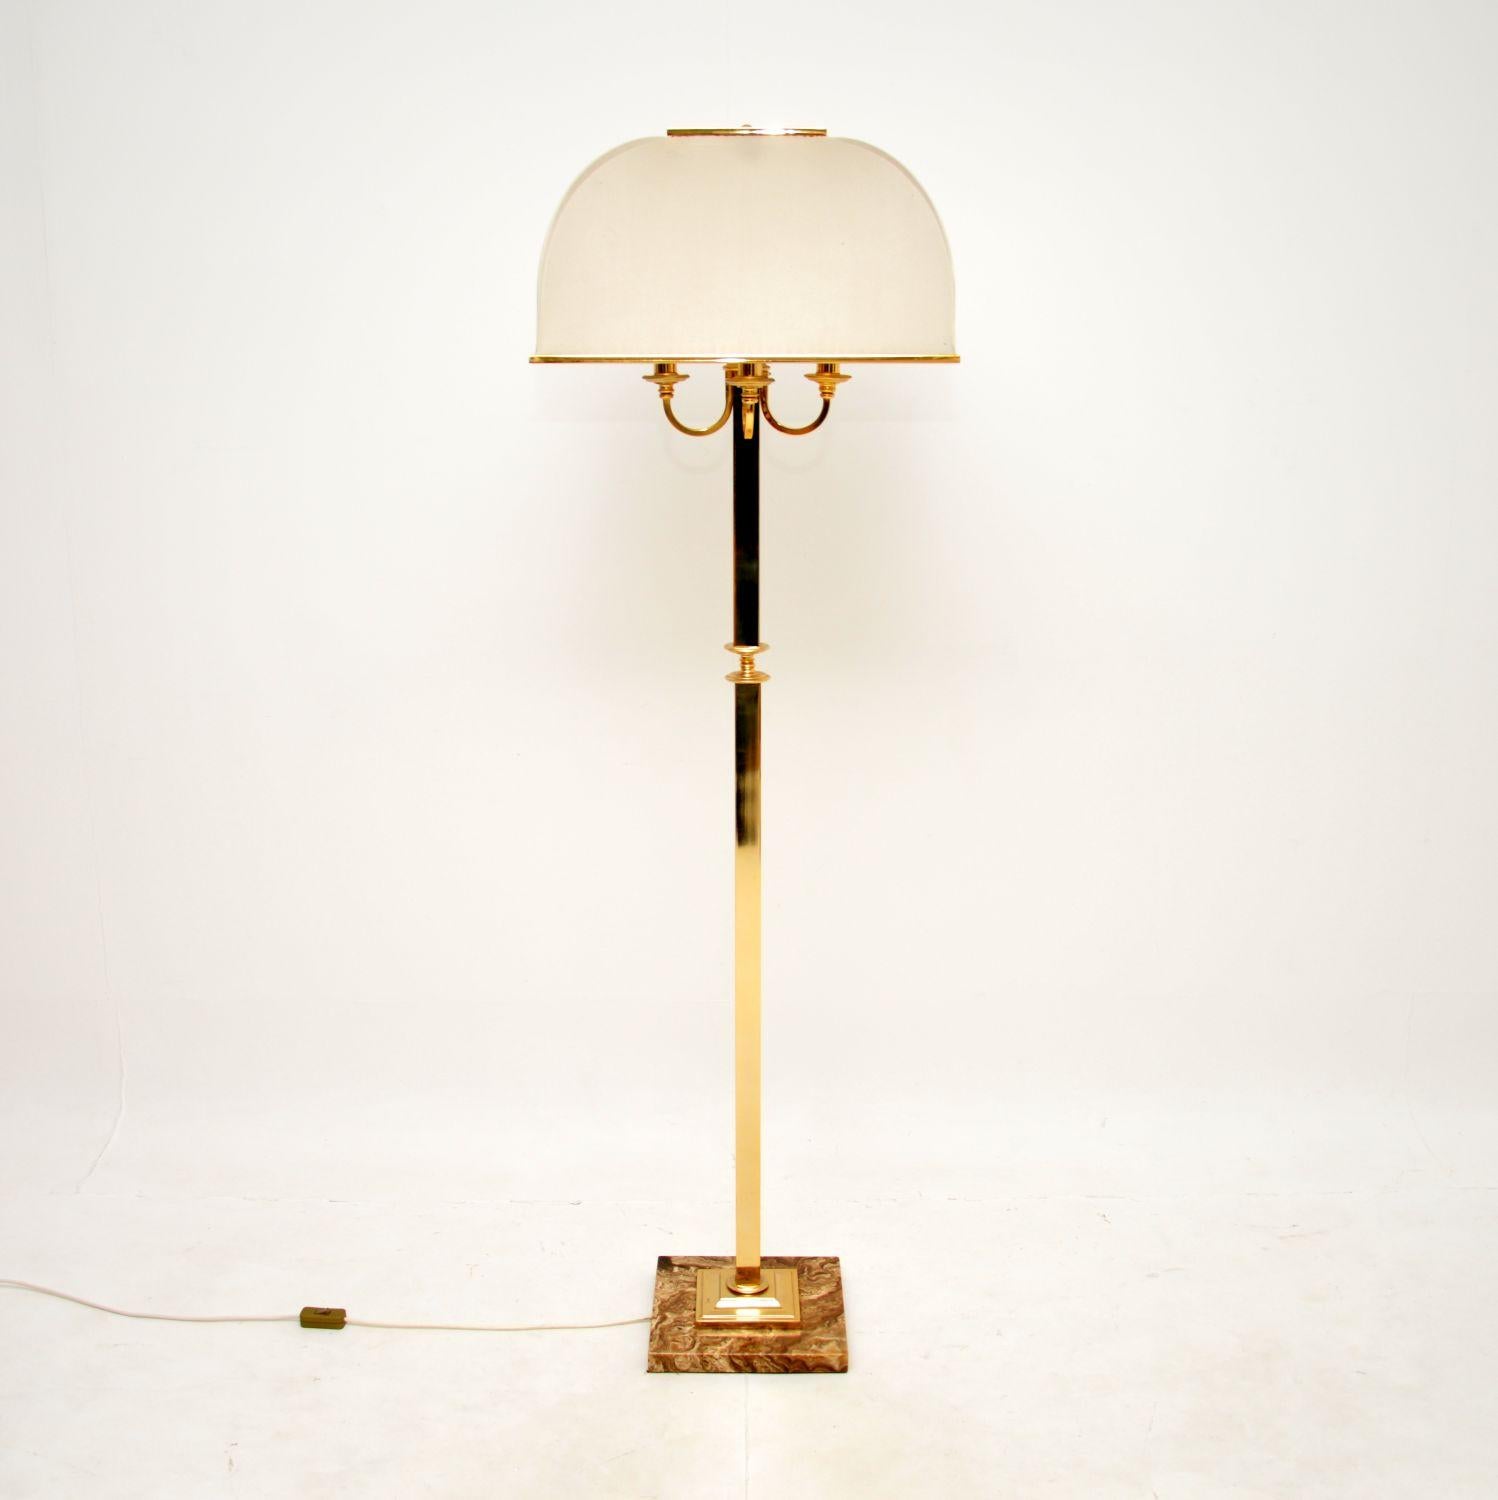 Un superbe lampadaire vintage en laiton et marbre, très probablement fabriqué en Italie et datant des années 1970.

Il est magnifiquement réalisé, le cadre en laiton reposant sur une magnifique base en marbre. Quatre supports d'ampoules sont placés